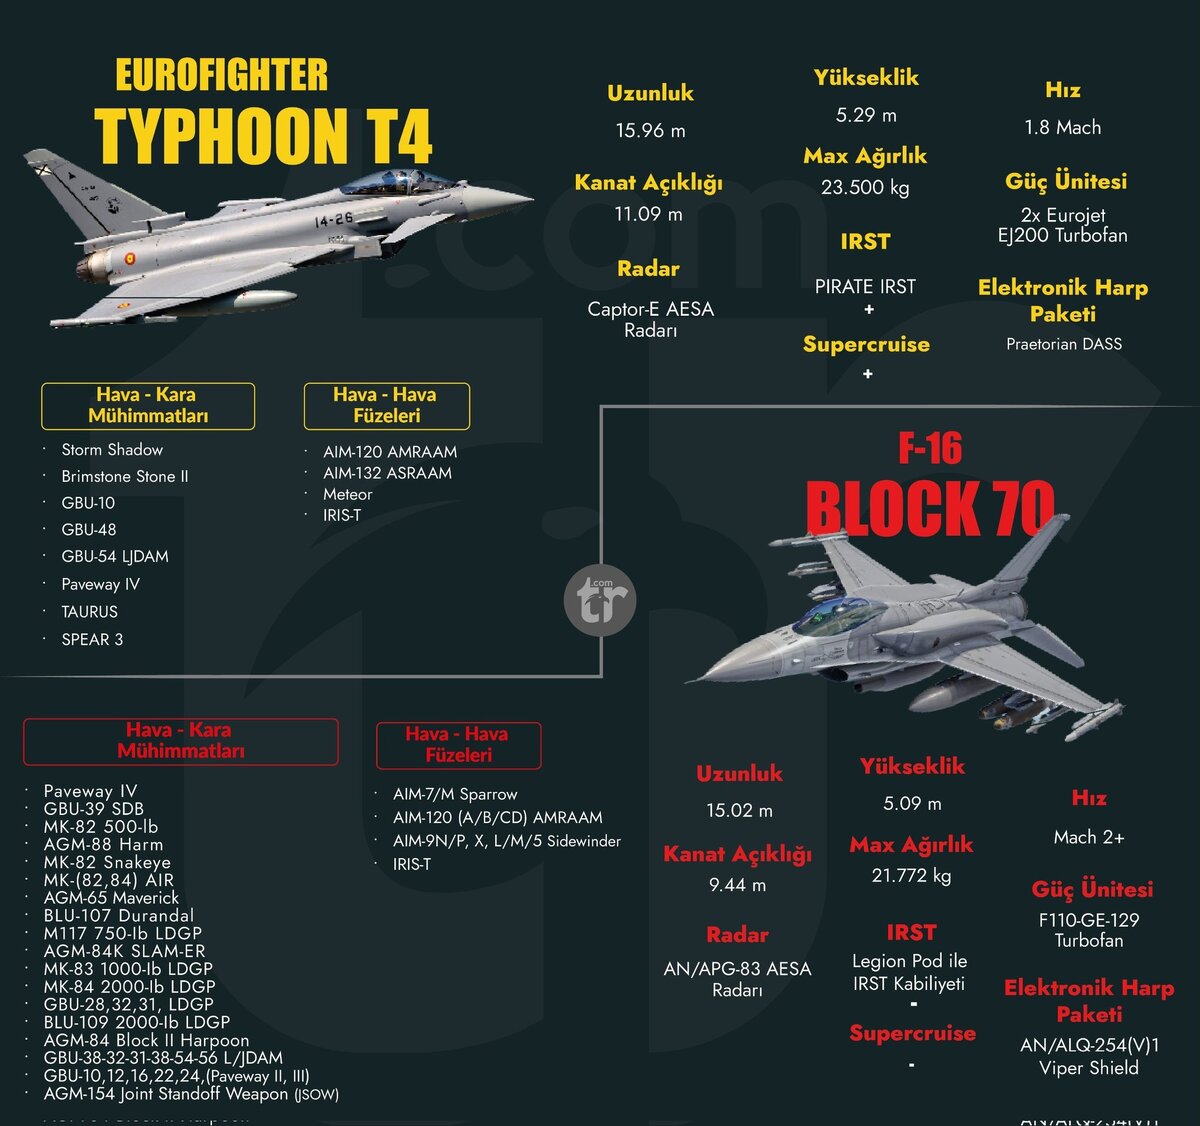 Европейские производители оружия готовы конкурировать за турецкие заказы Великобритания обещала Турции помочь убедить Германию продать ей истребители Eurofighter Typhoon, против чего возражают в...-4